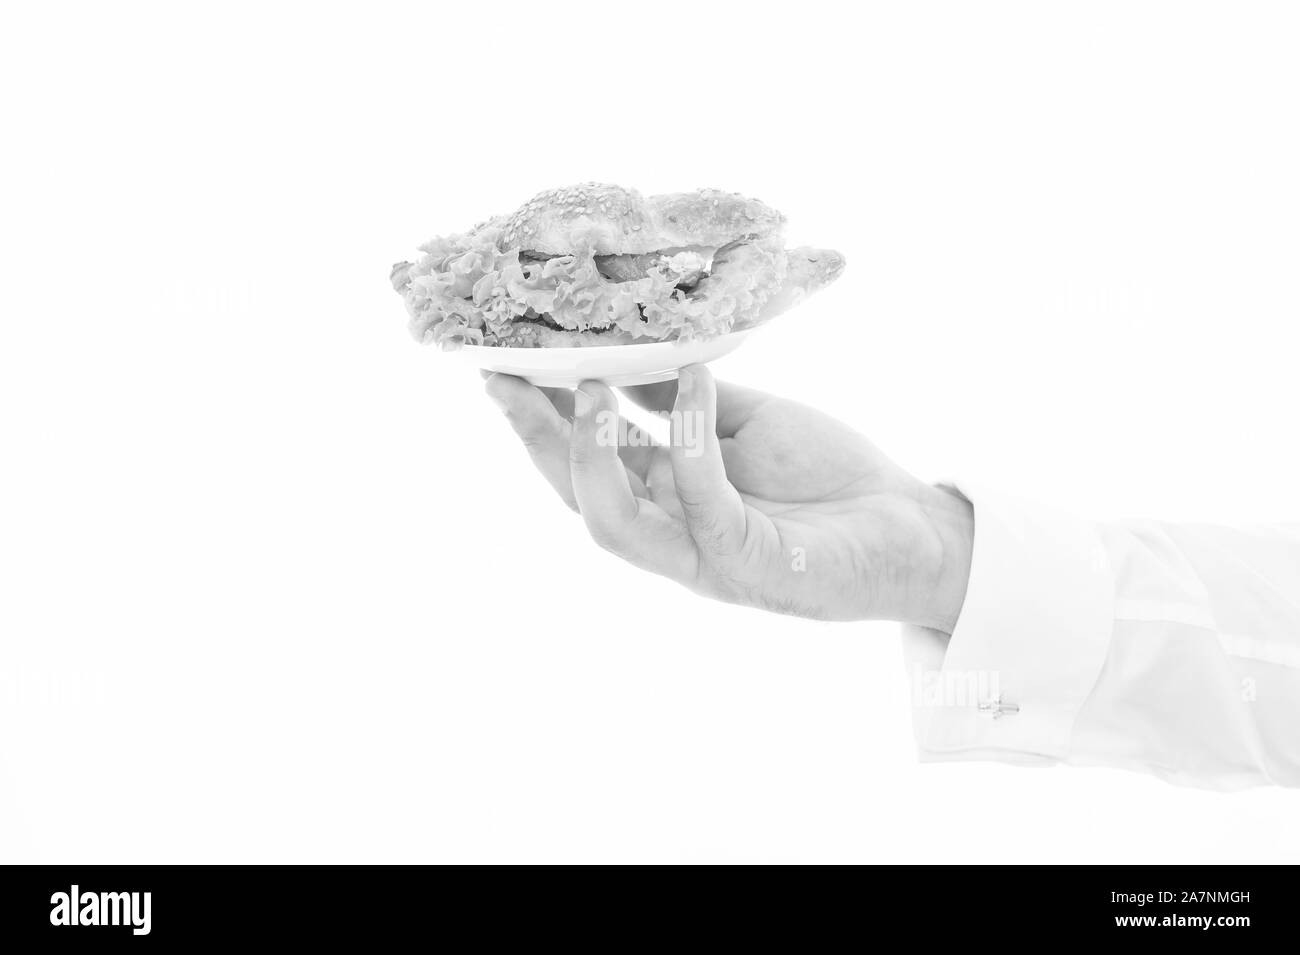 Kalorien und nähren. Hand der Kellner tragen Platte mit Schale. Leckere Croissants. Das Croissant gefüllt mit Salat und frischem Gemüse. Cafe Konzept. Gesundes Essen. Traditionelle französische Croissant. Stockfoto